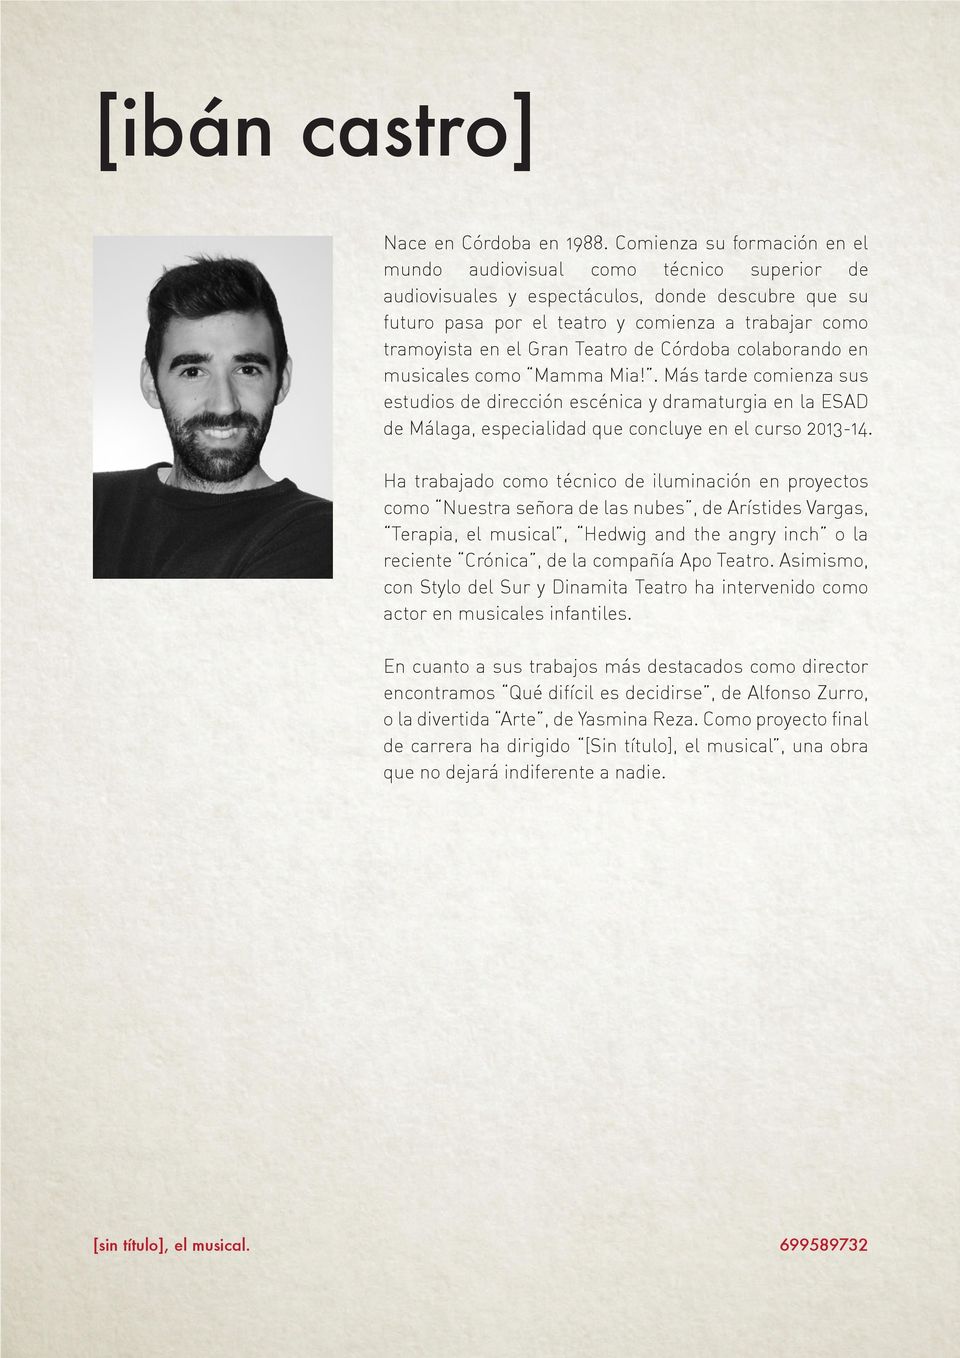 Teatro de Córdoba colaborando en musicales como Mamma Mia!. Más tarde comienza sus estudios de dirección escénica y dramaturgia en la ESAD de Málaga, especialidad que concluye en el curso 2013-14.